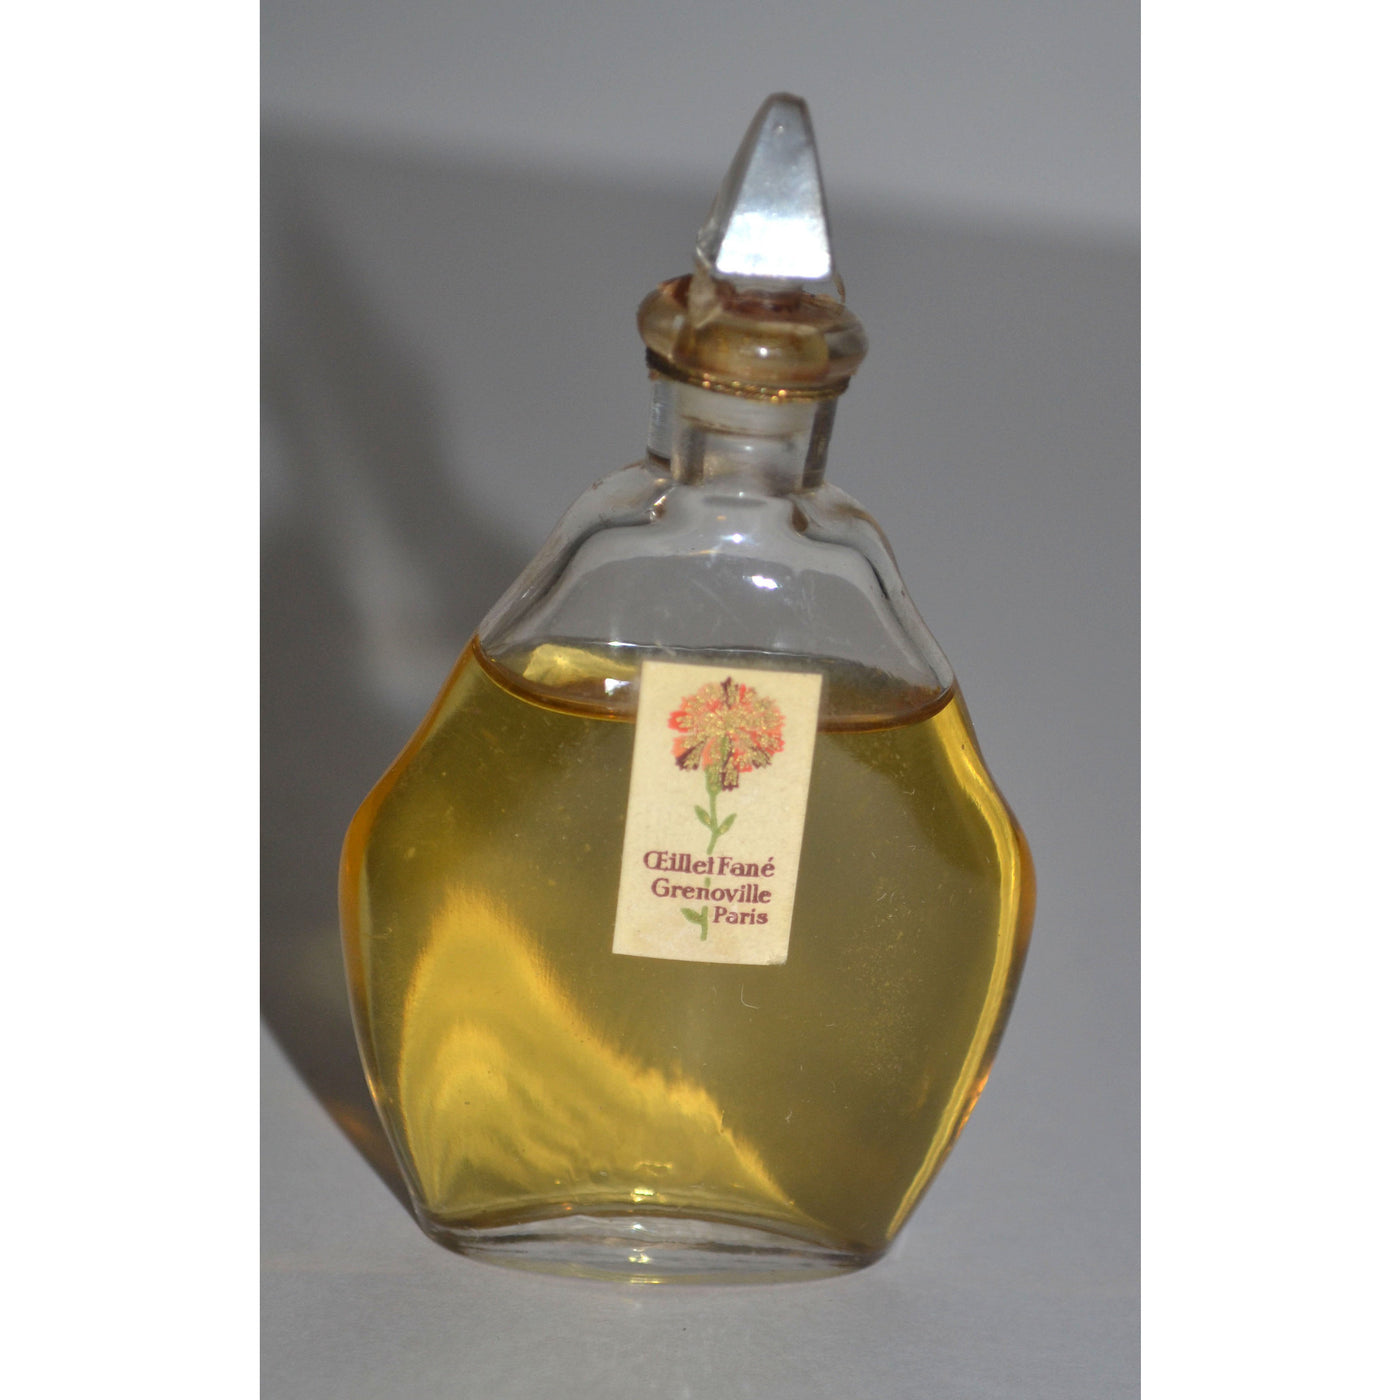 Vintage Grenoville Ceillet Fane Perfume